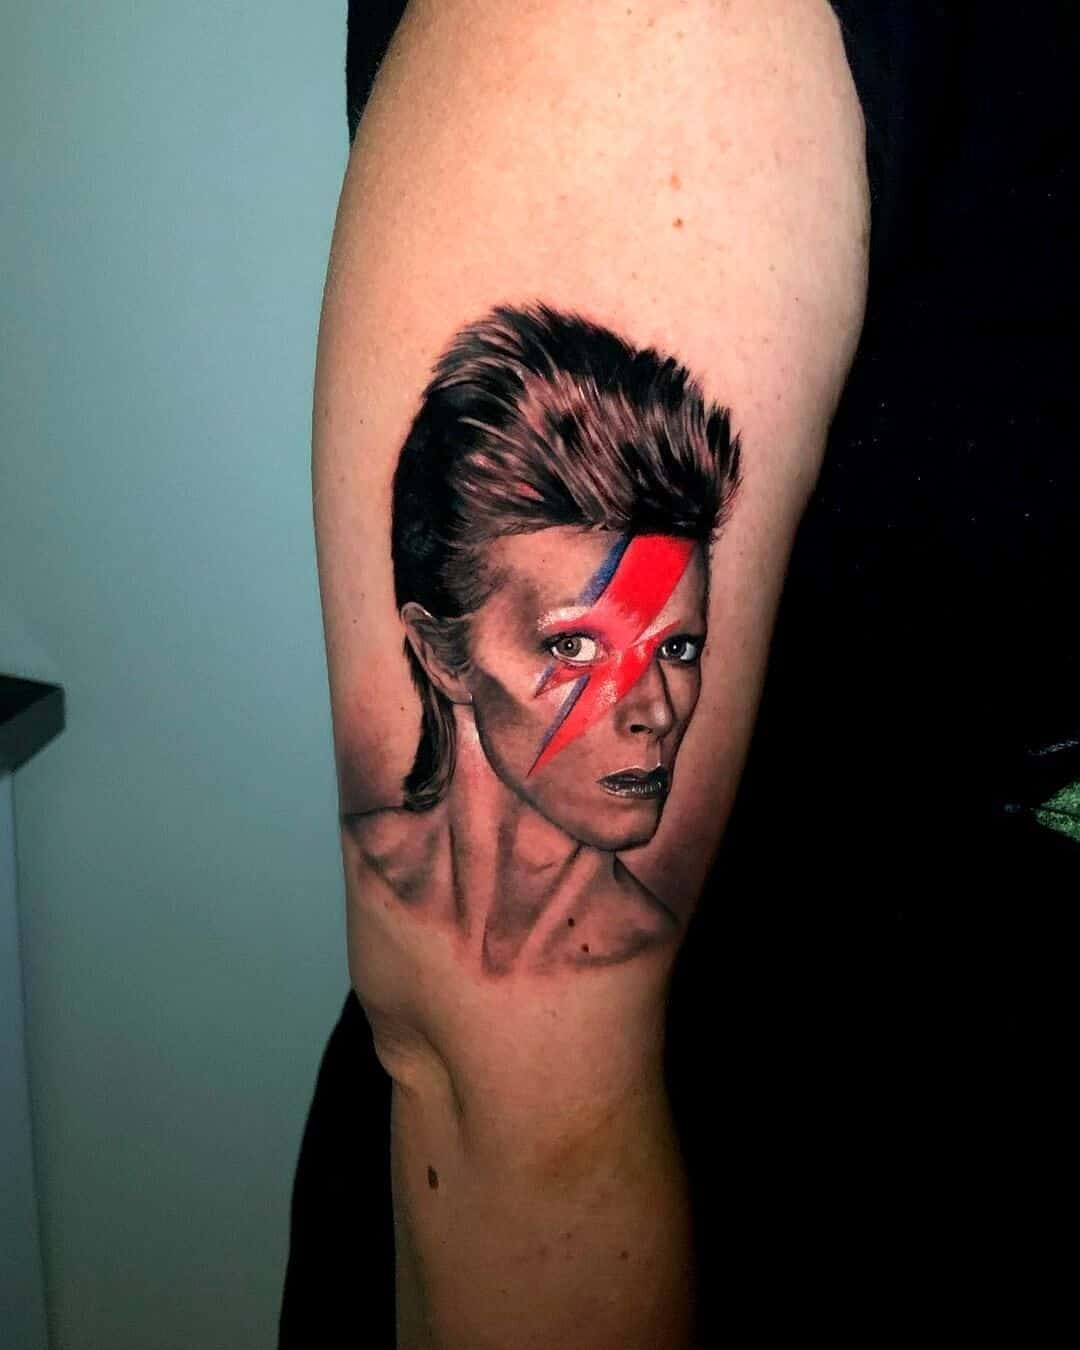 David Portrait tattoo on arm by namuh tattoo